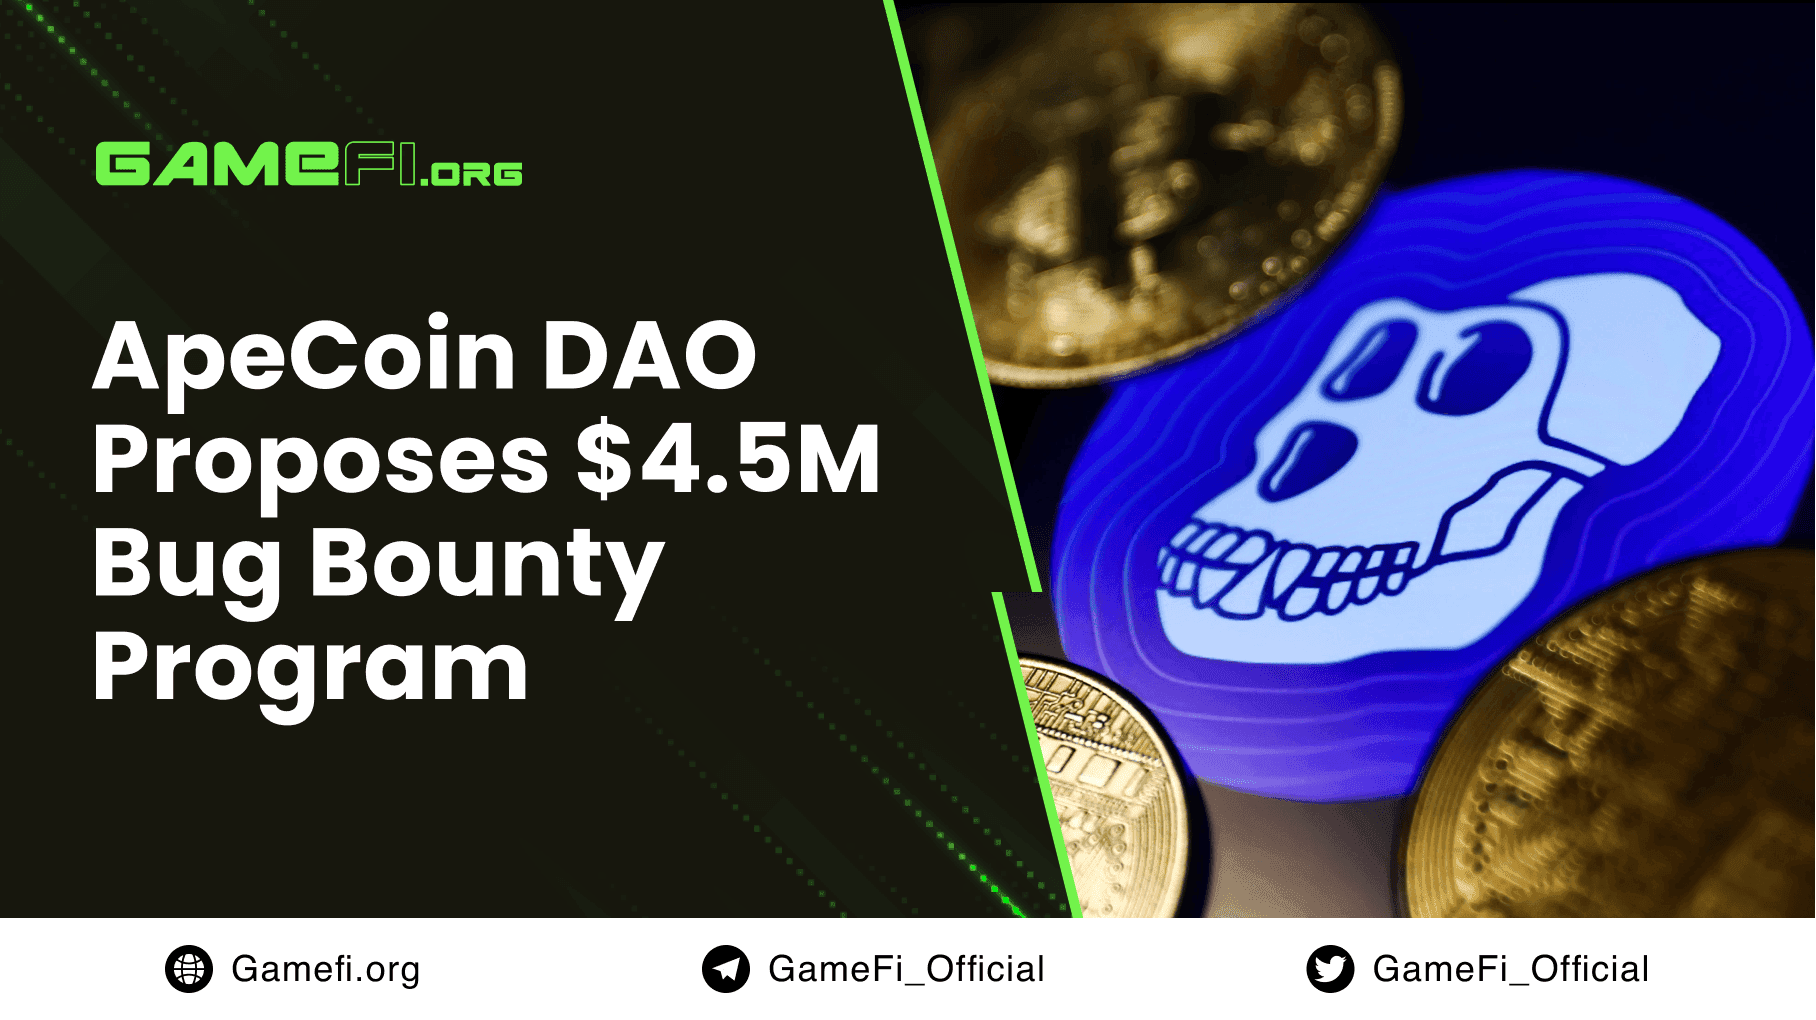 ApeCoin DAO Proposes $4.5M Bug Bounty Program